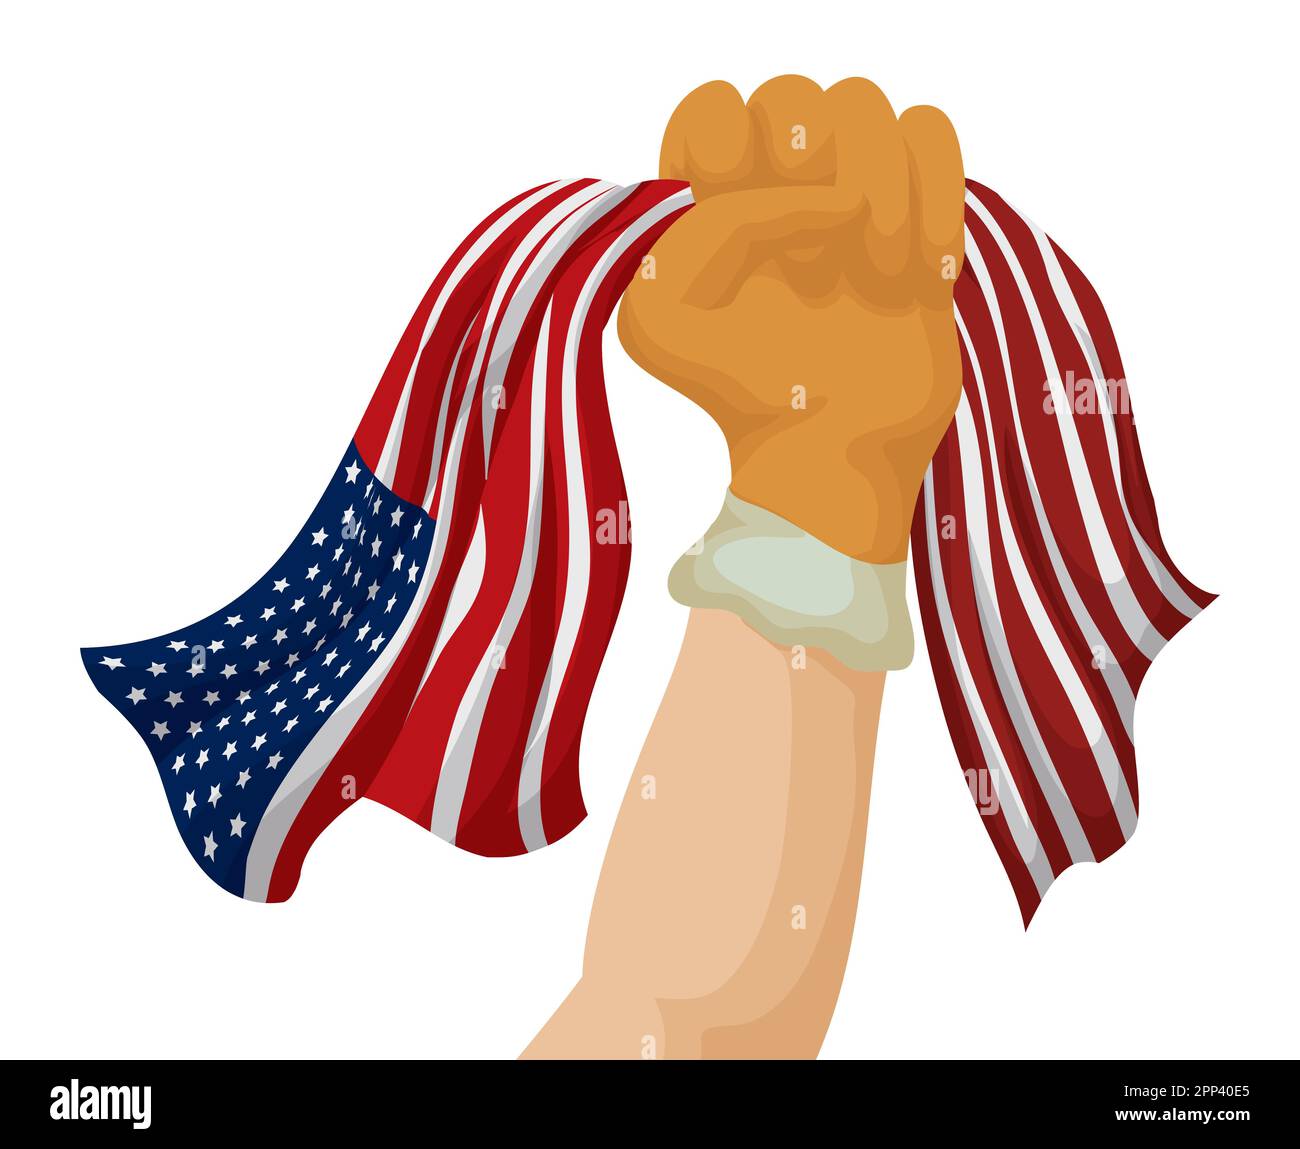 Poing levé portant un gant de travail tout en portant un drapeau américain.  Style dessin animé Image Vectorielle Stock - Alamy